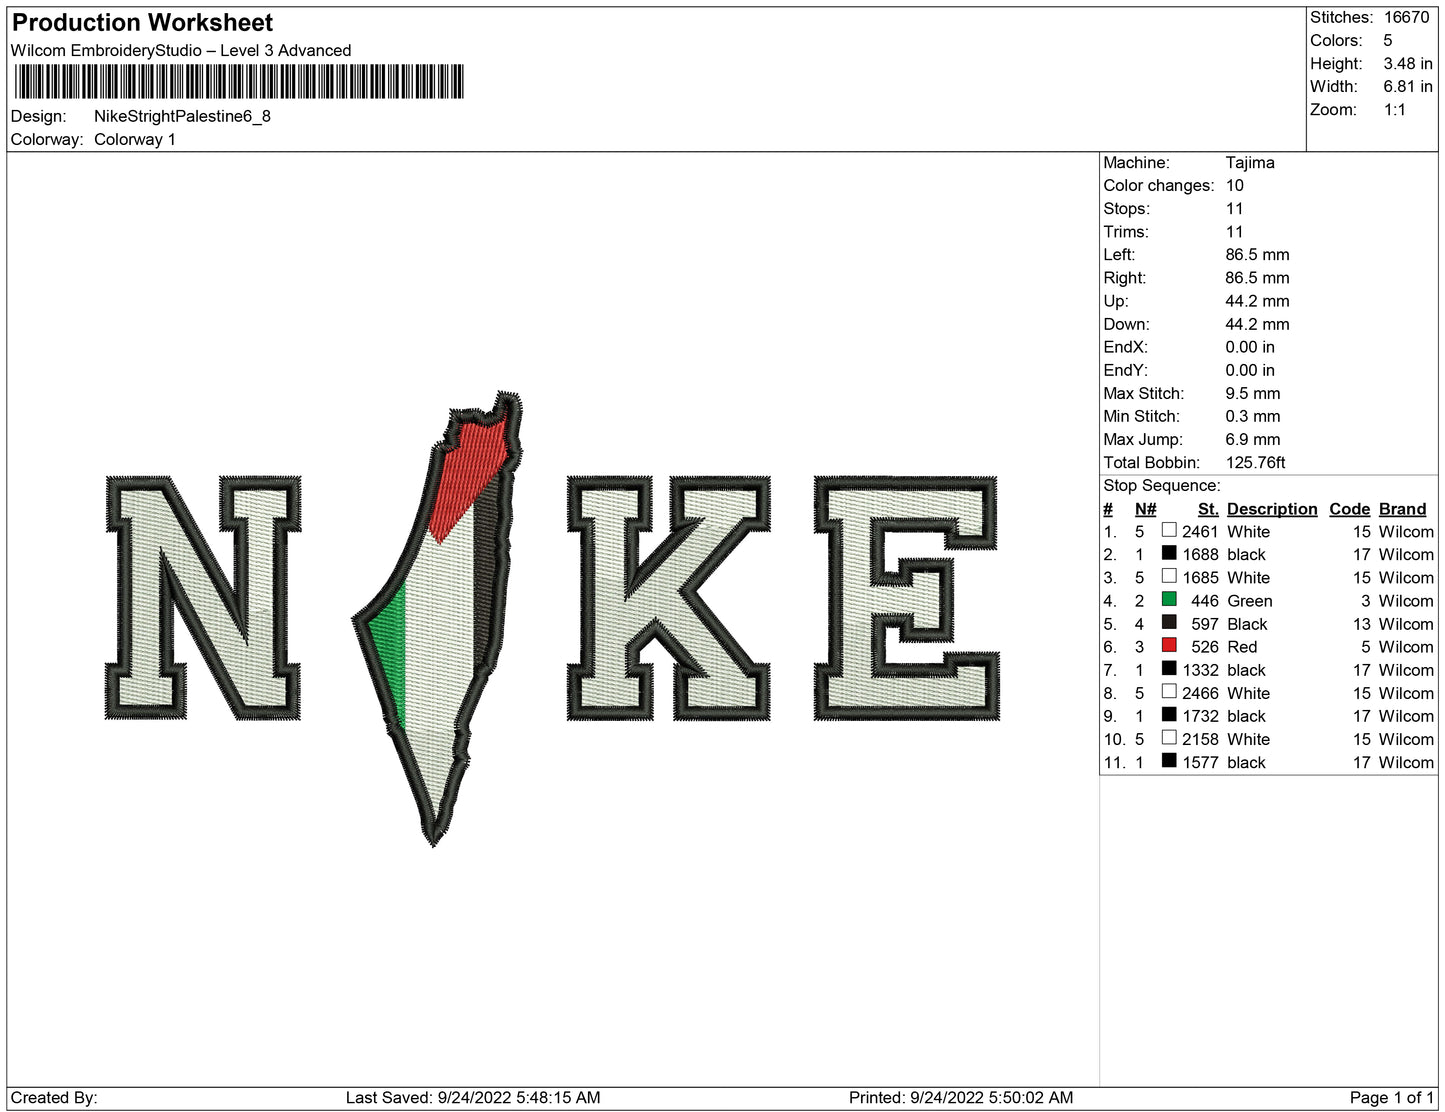 Nike Stright Palestine